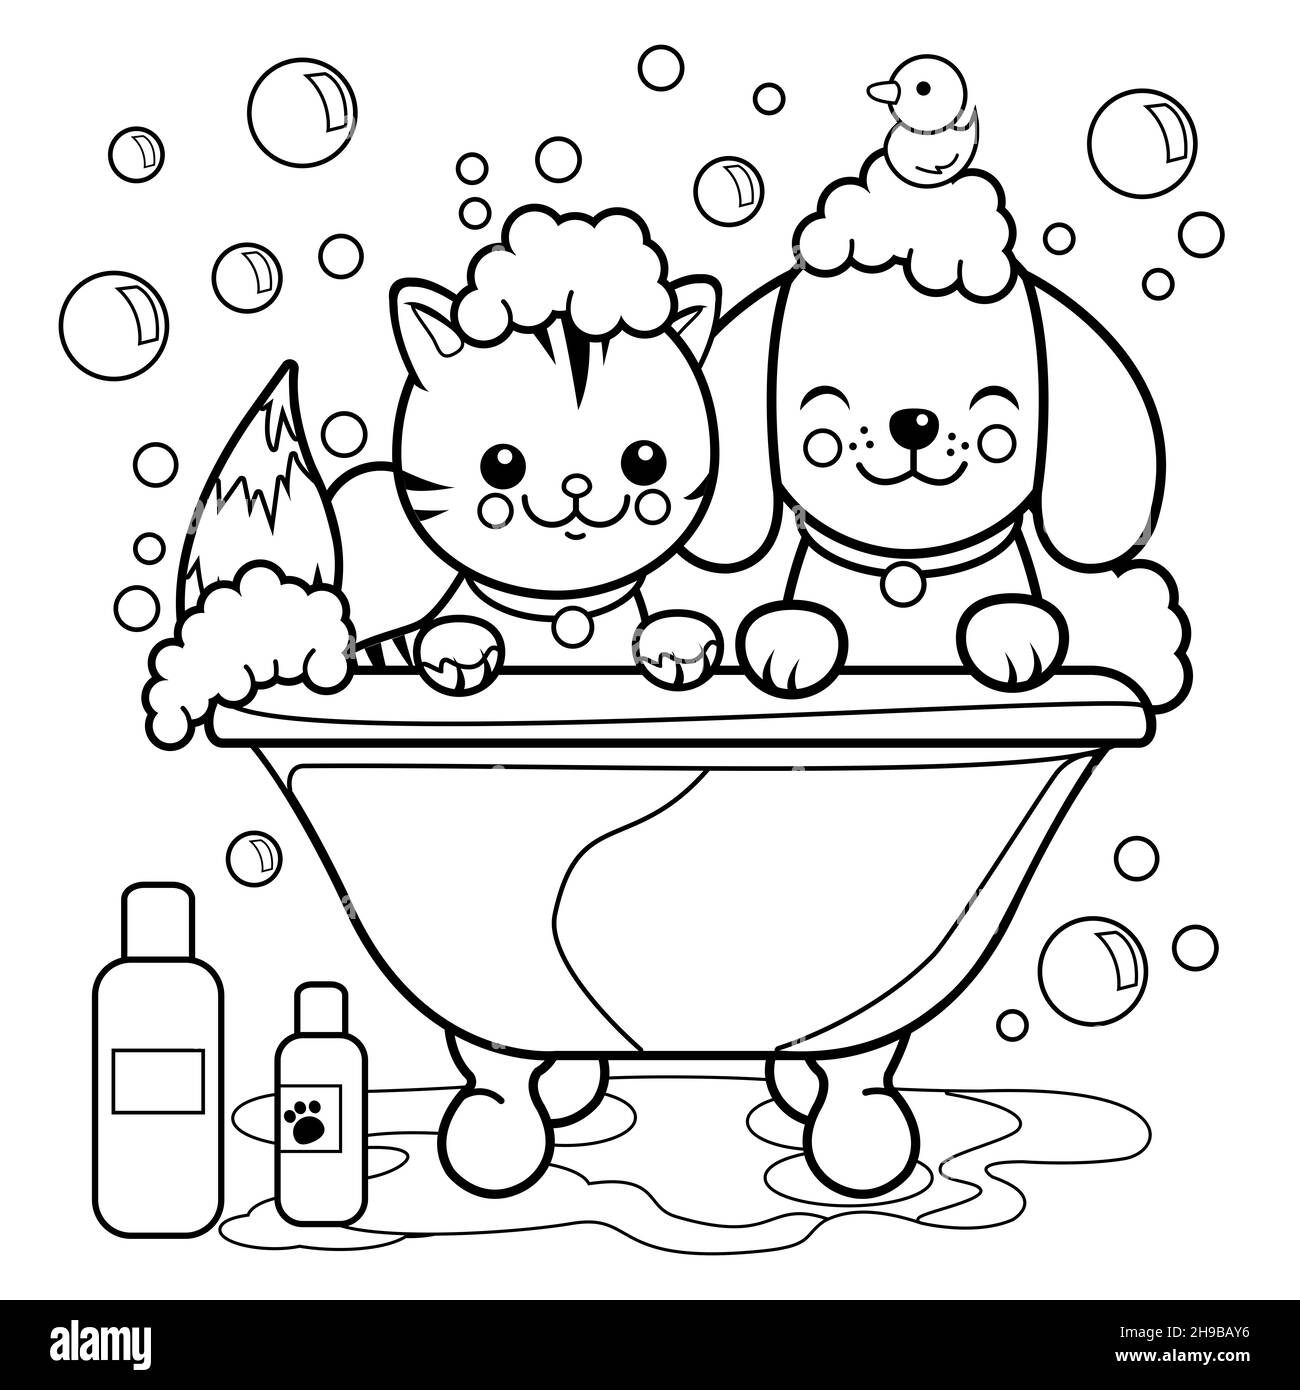 Un chien et un chat dans une baignoire prenant un bain de bulles.Page de couleur noir et blanc. Banque D'Images